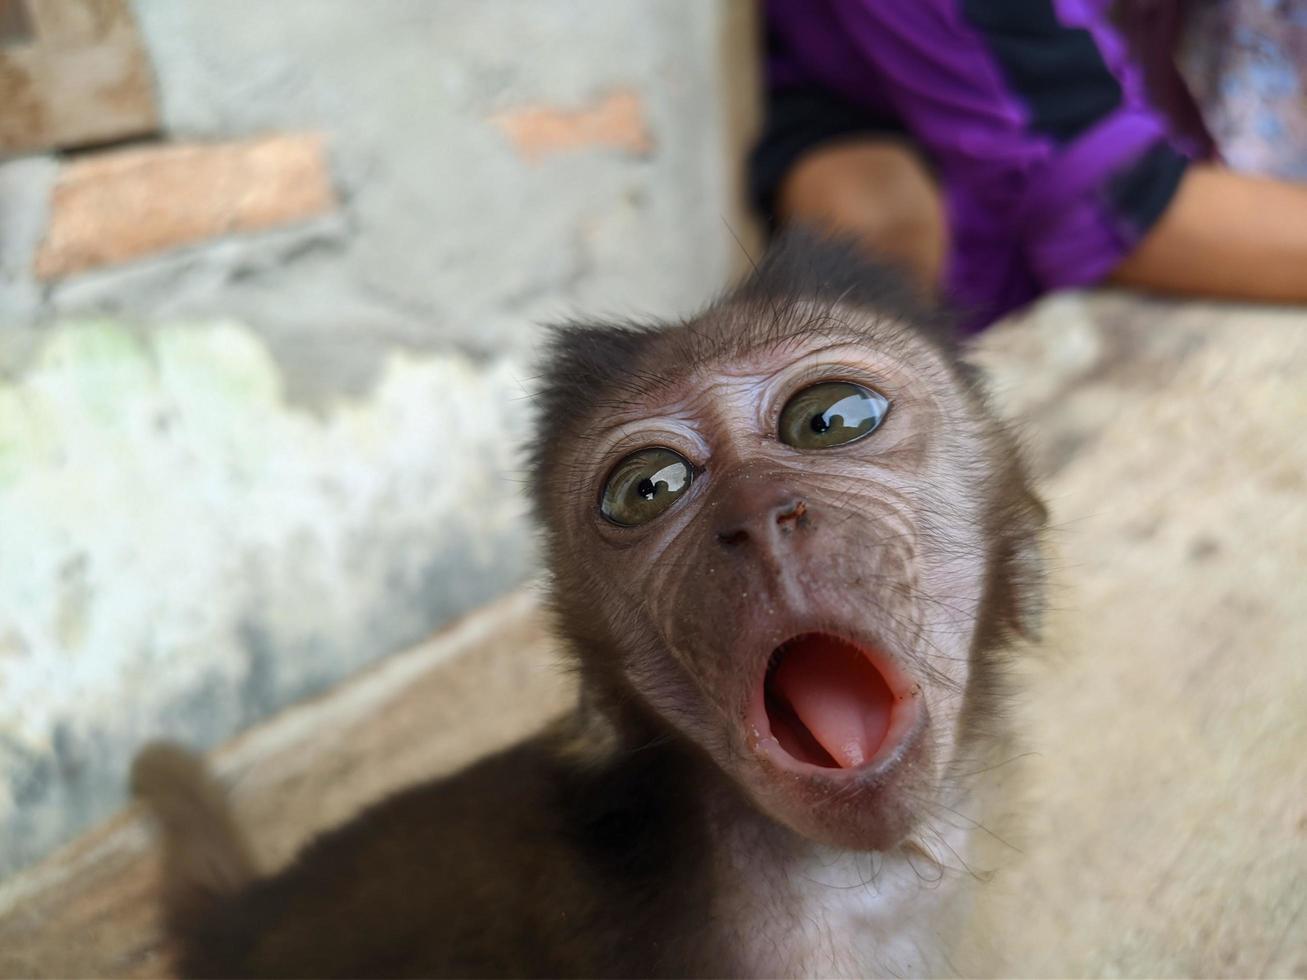 bebis apa separerat från dess mor och antogs förbi människor, bevarande foto